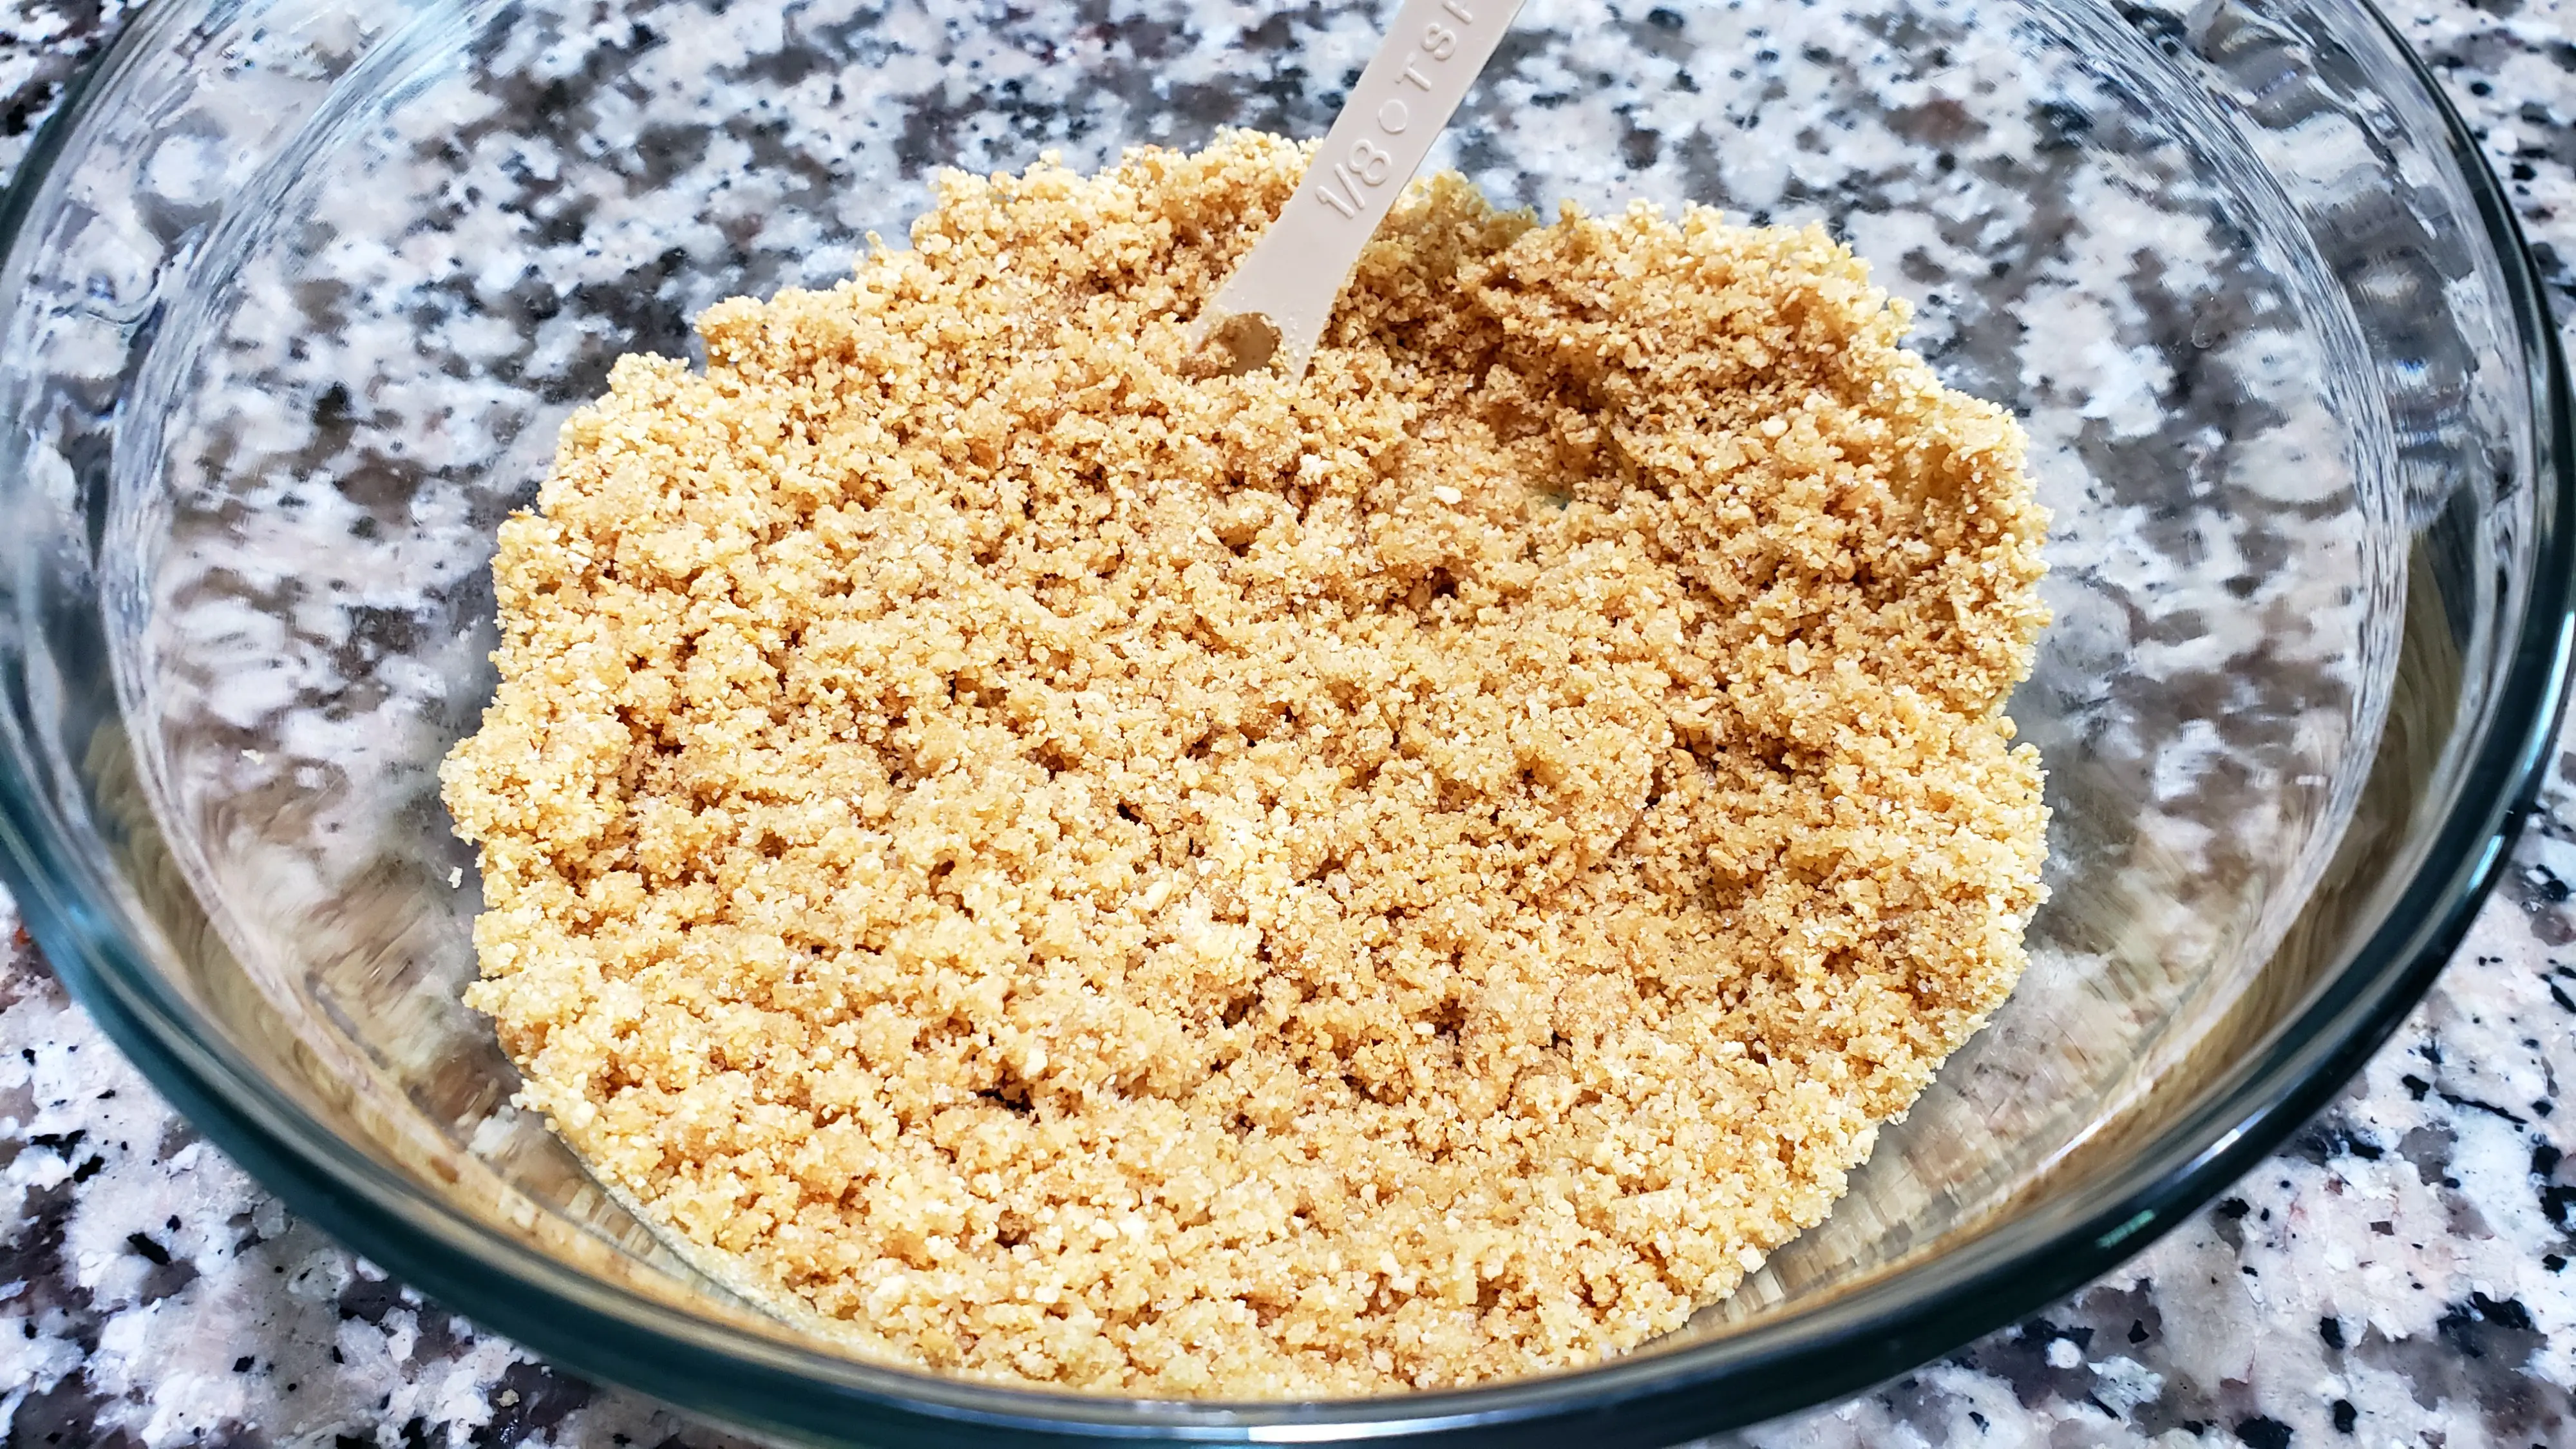 graham cracker crumb mixture in a bowl.